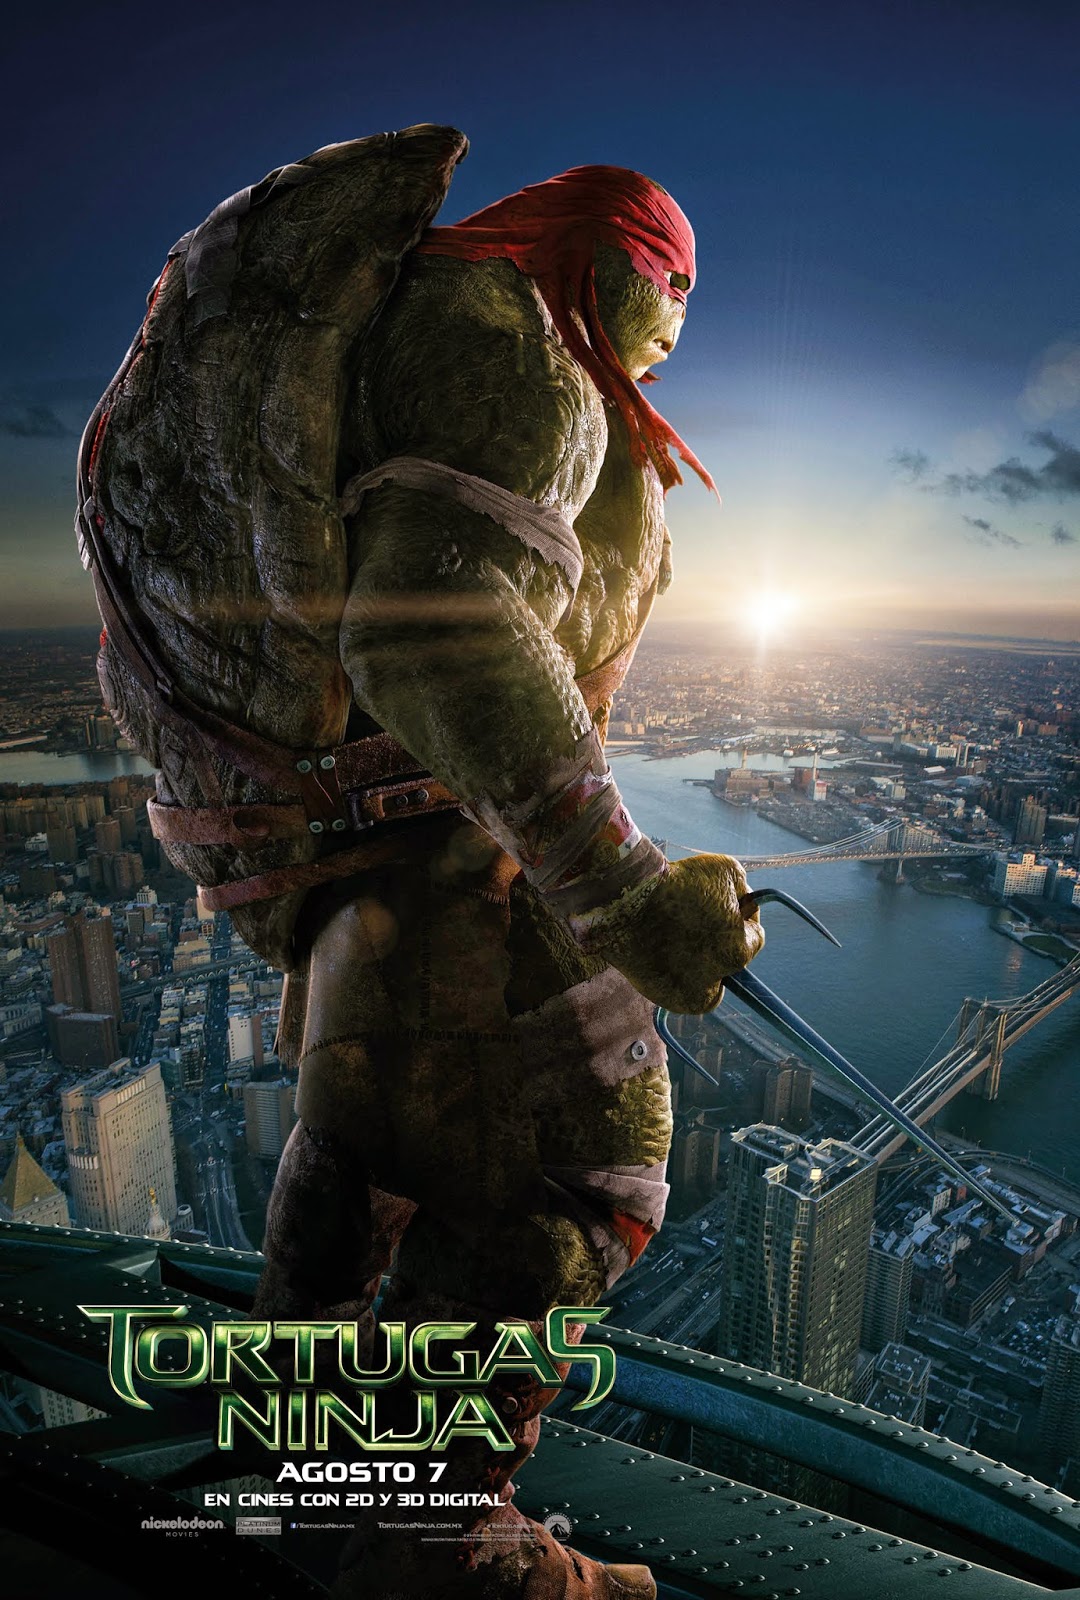 Nuevos pósters y tráiler de la película "Tortugas Ninja" PROYECTOR XD